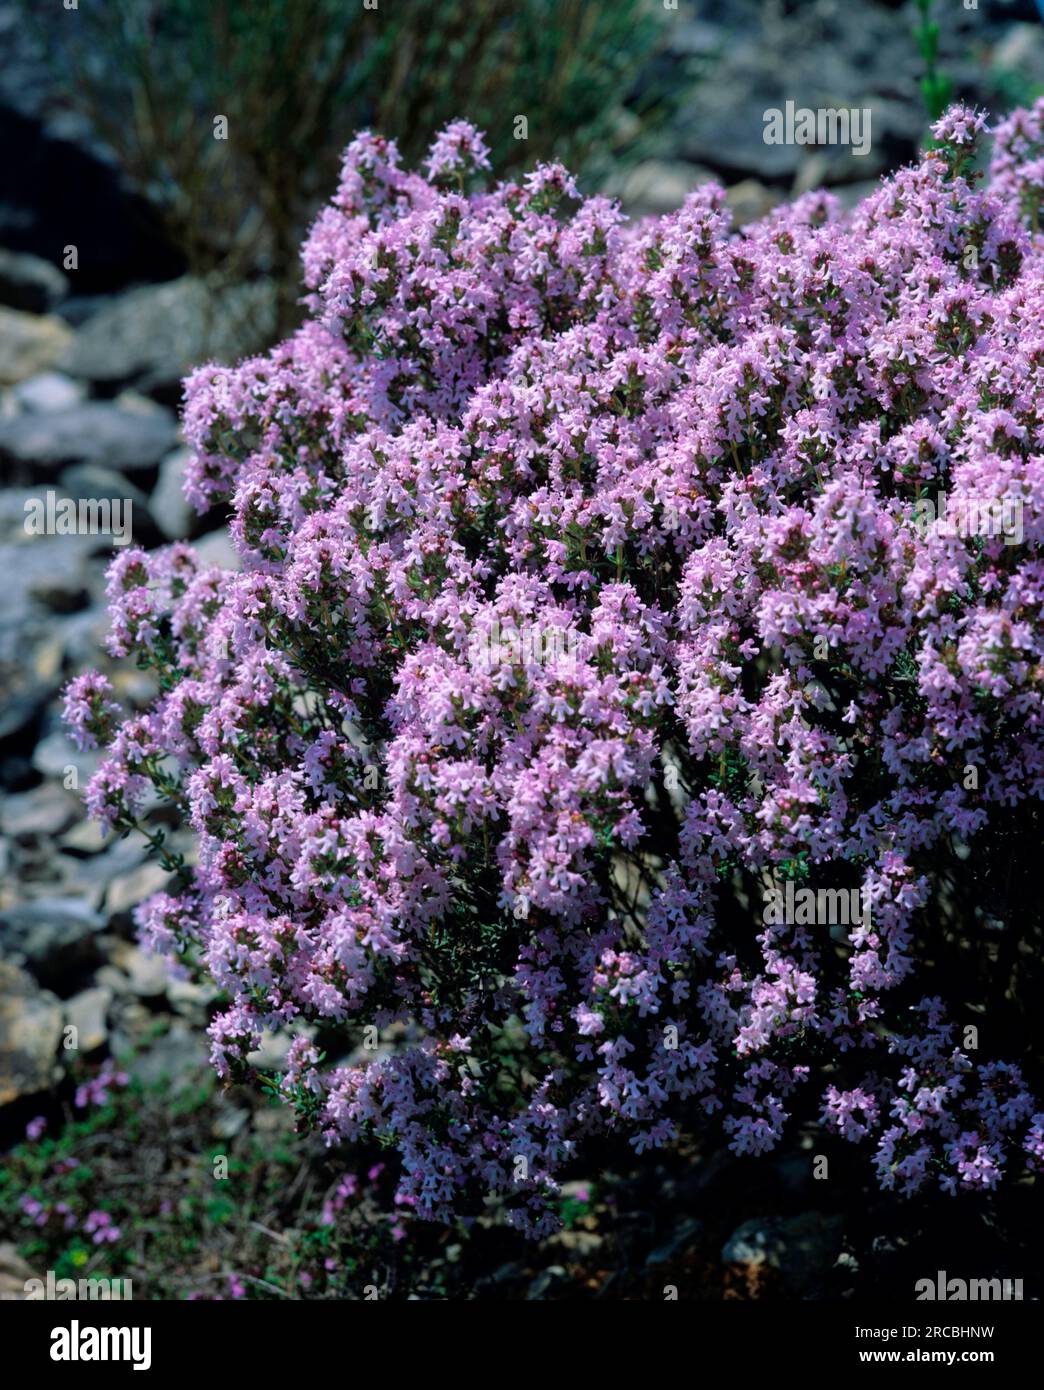 Thyme (Thymus vulgaris) Stock Photo